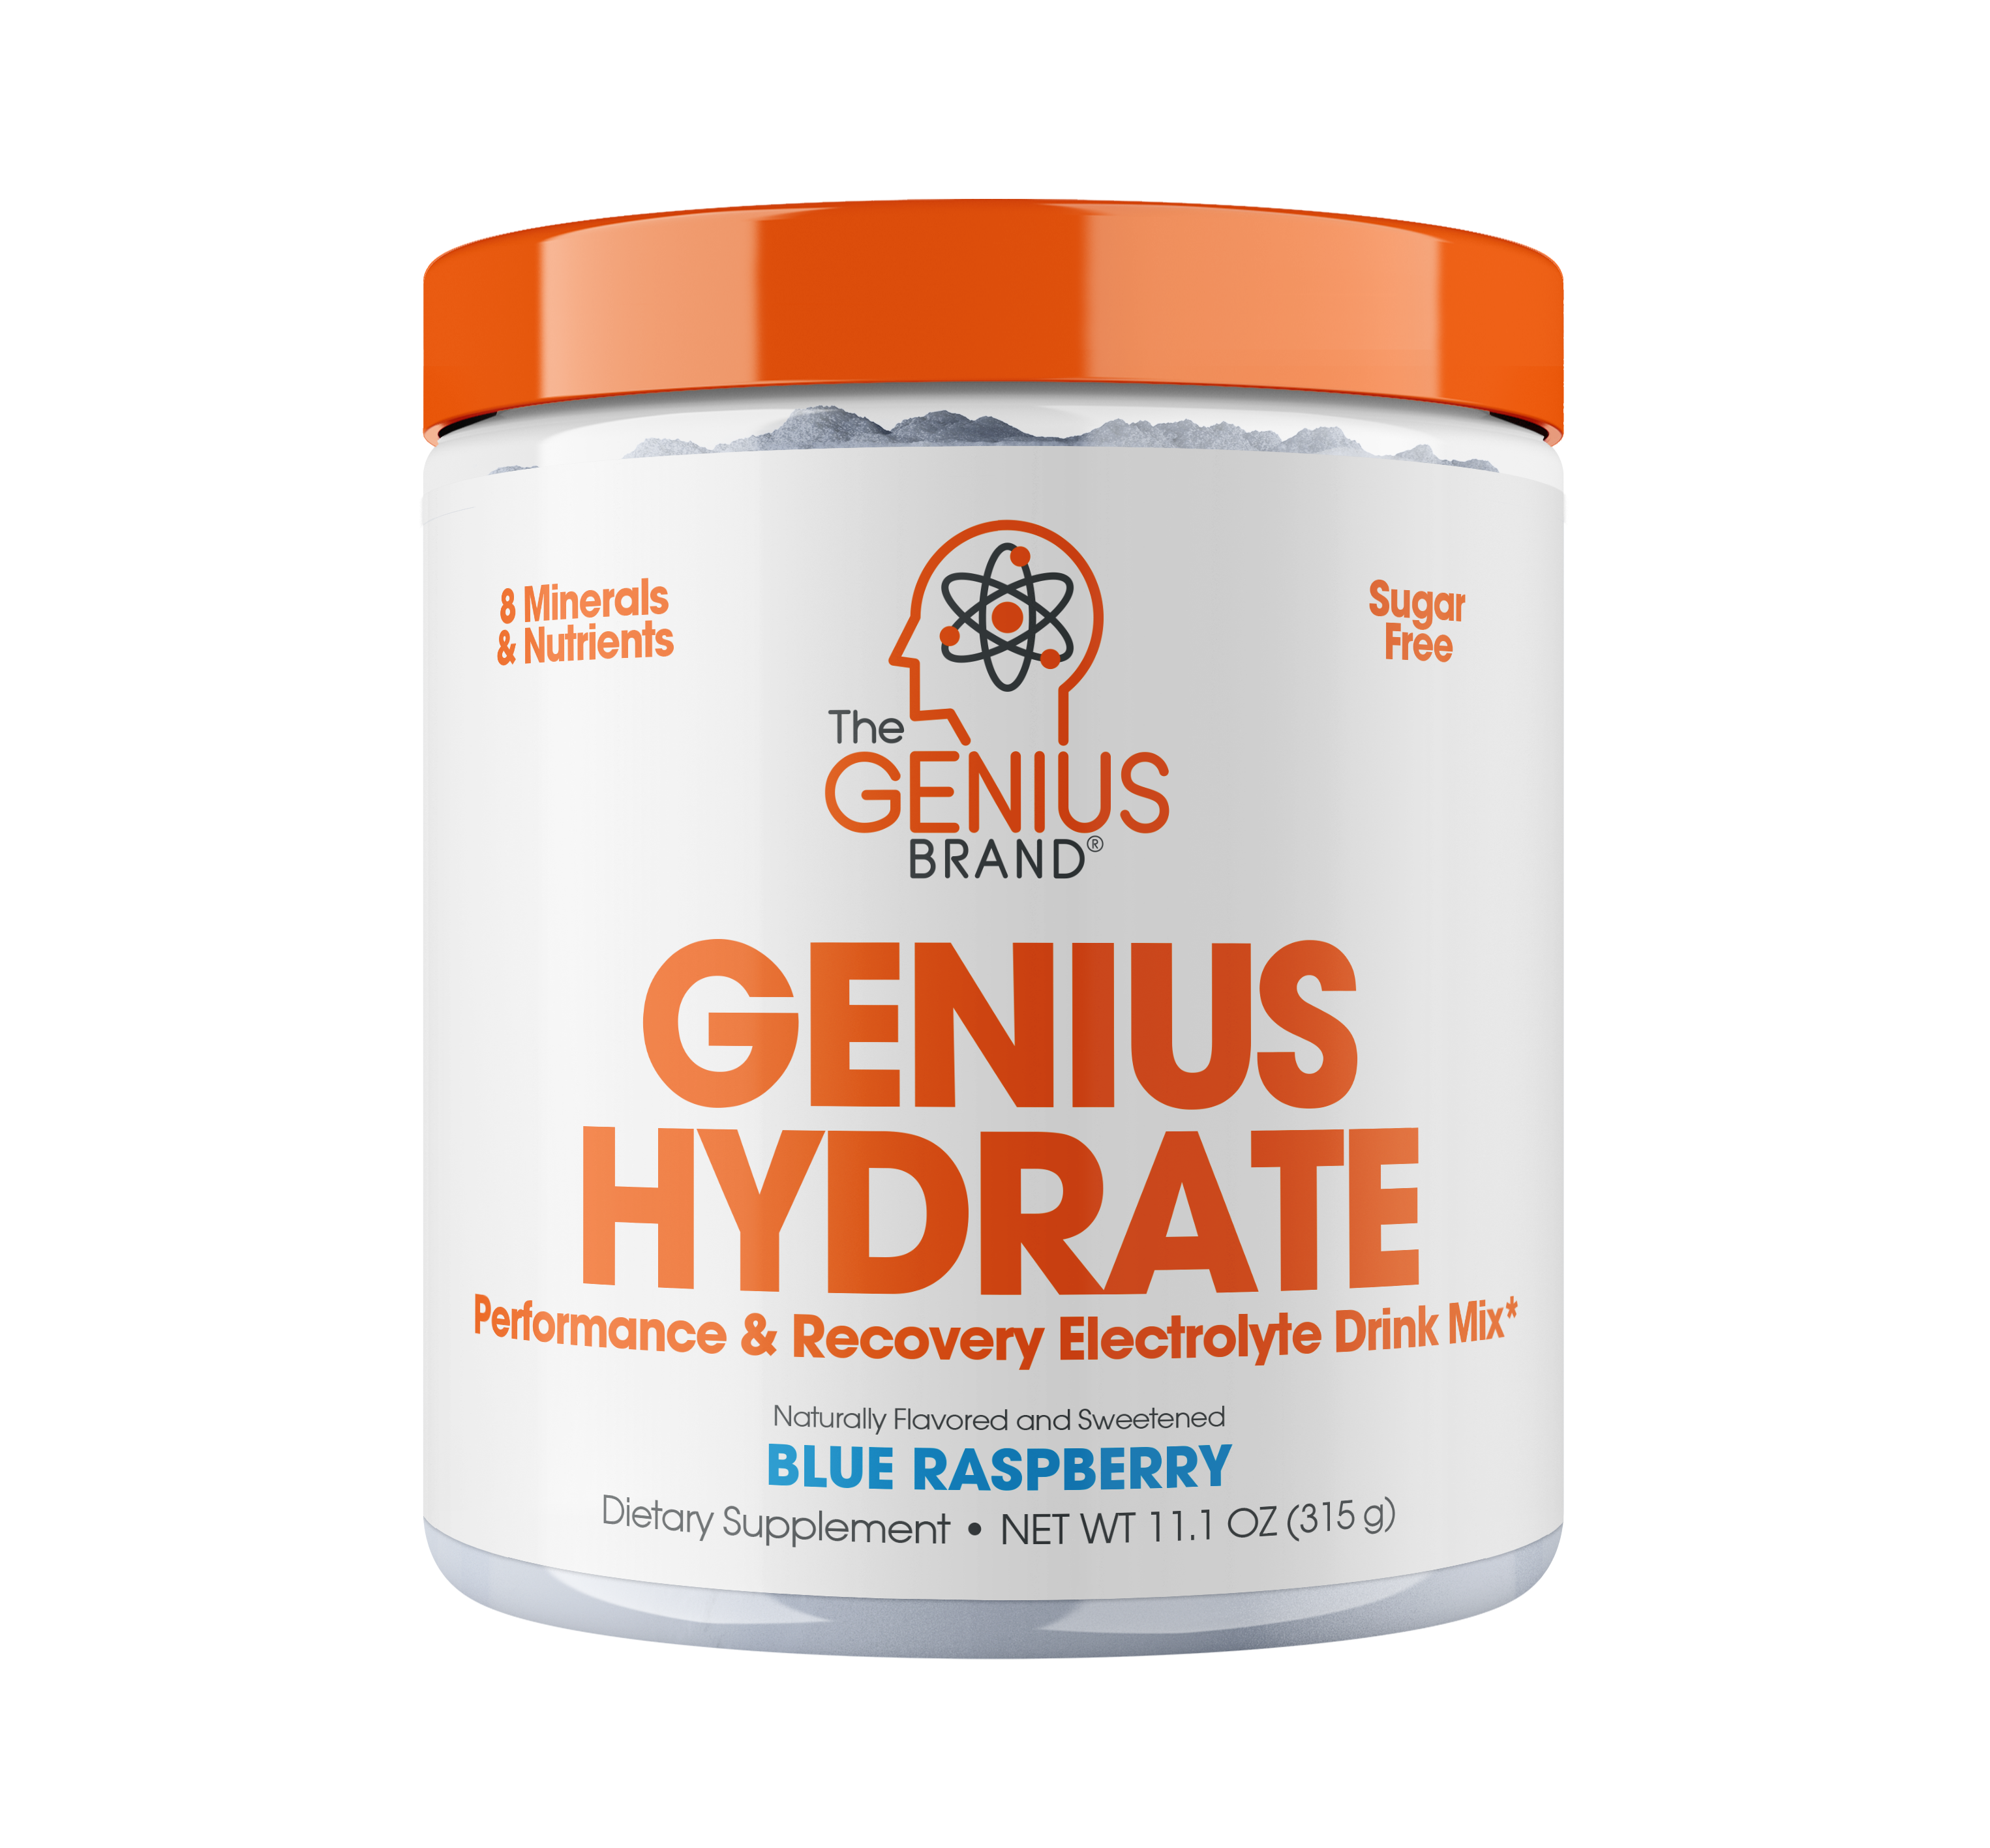 Genius Hydrate